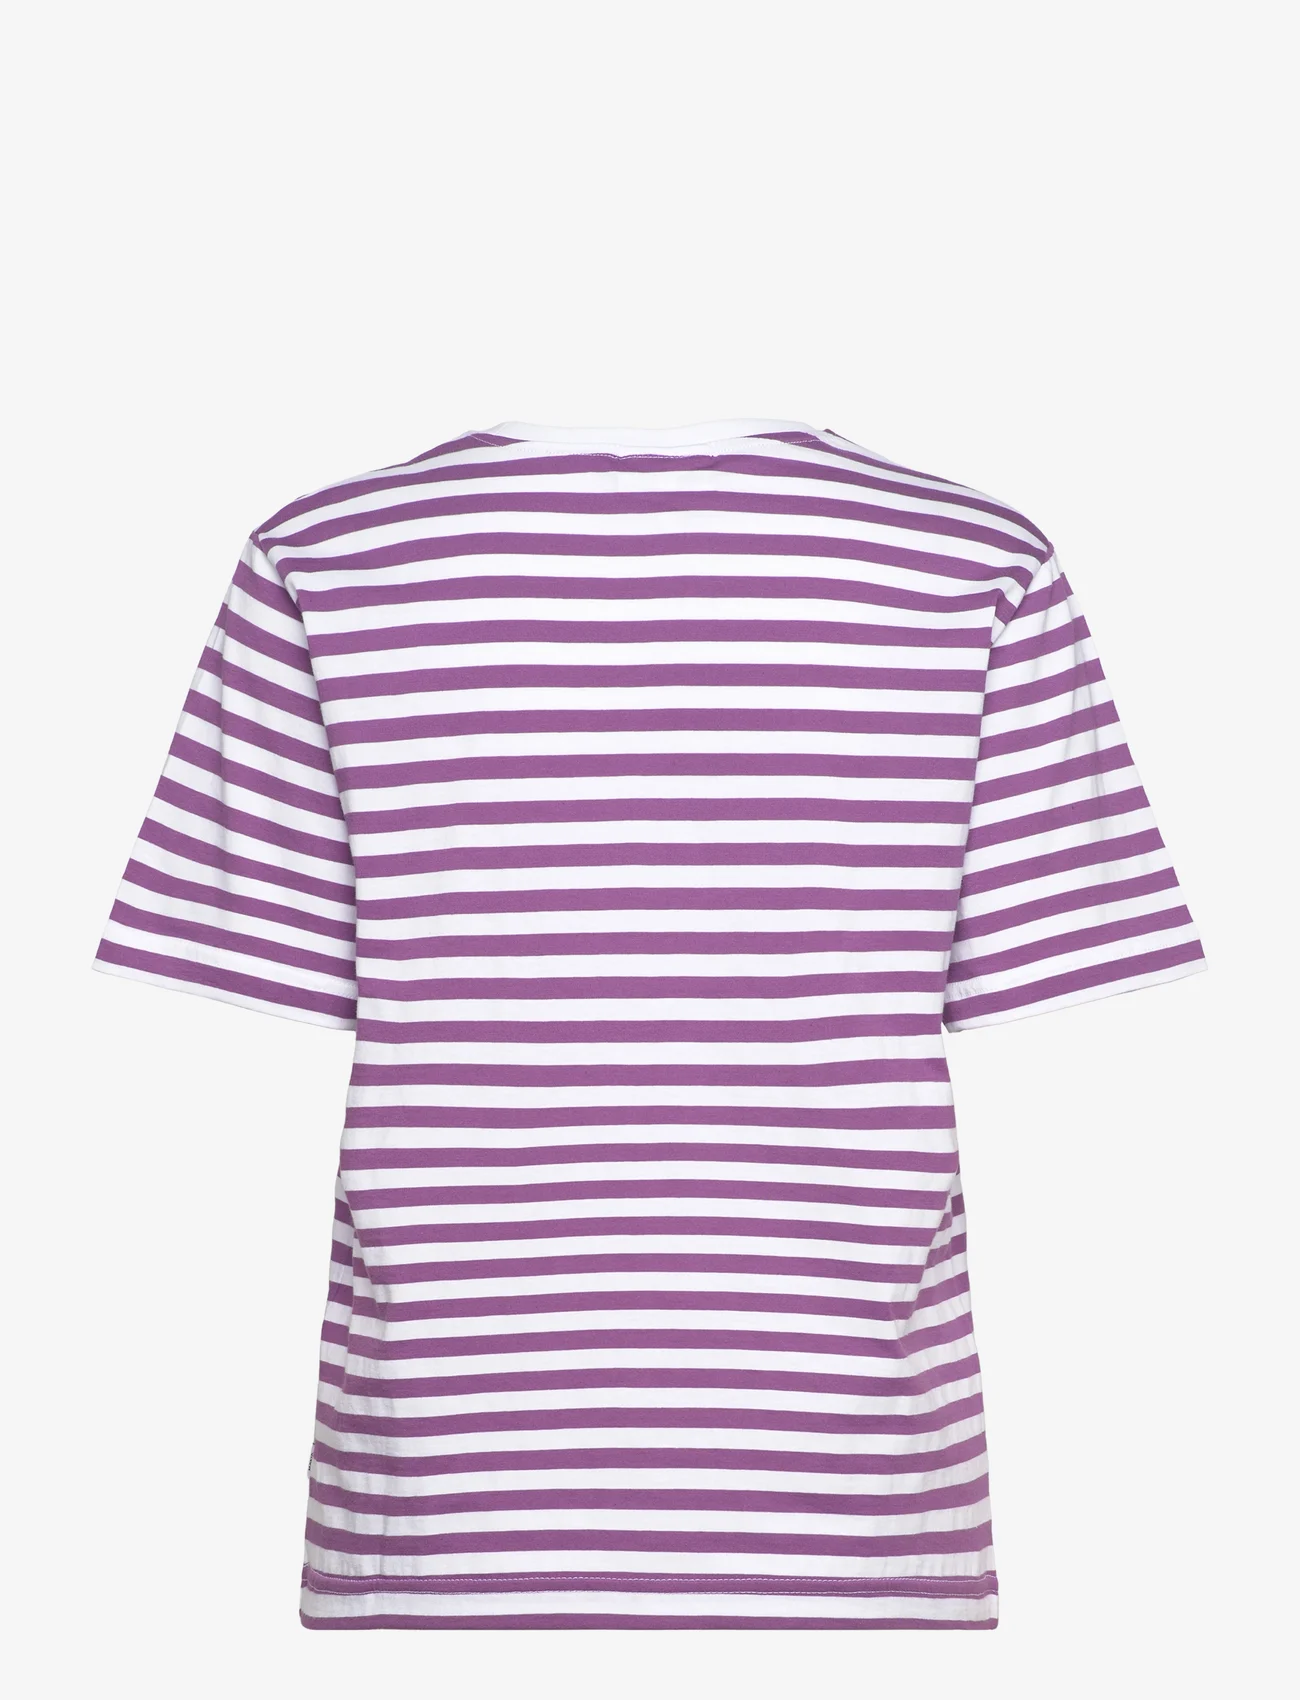 Makia - Verkstad T-Shirt - madalaimad hinnad - purple-white - 1